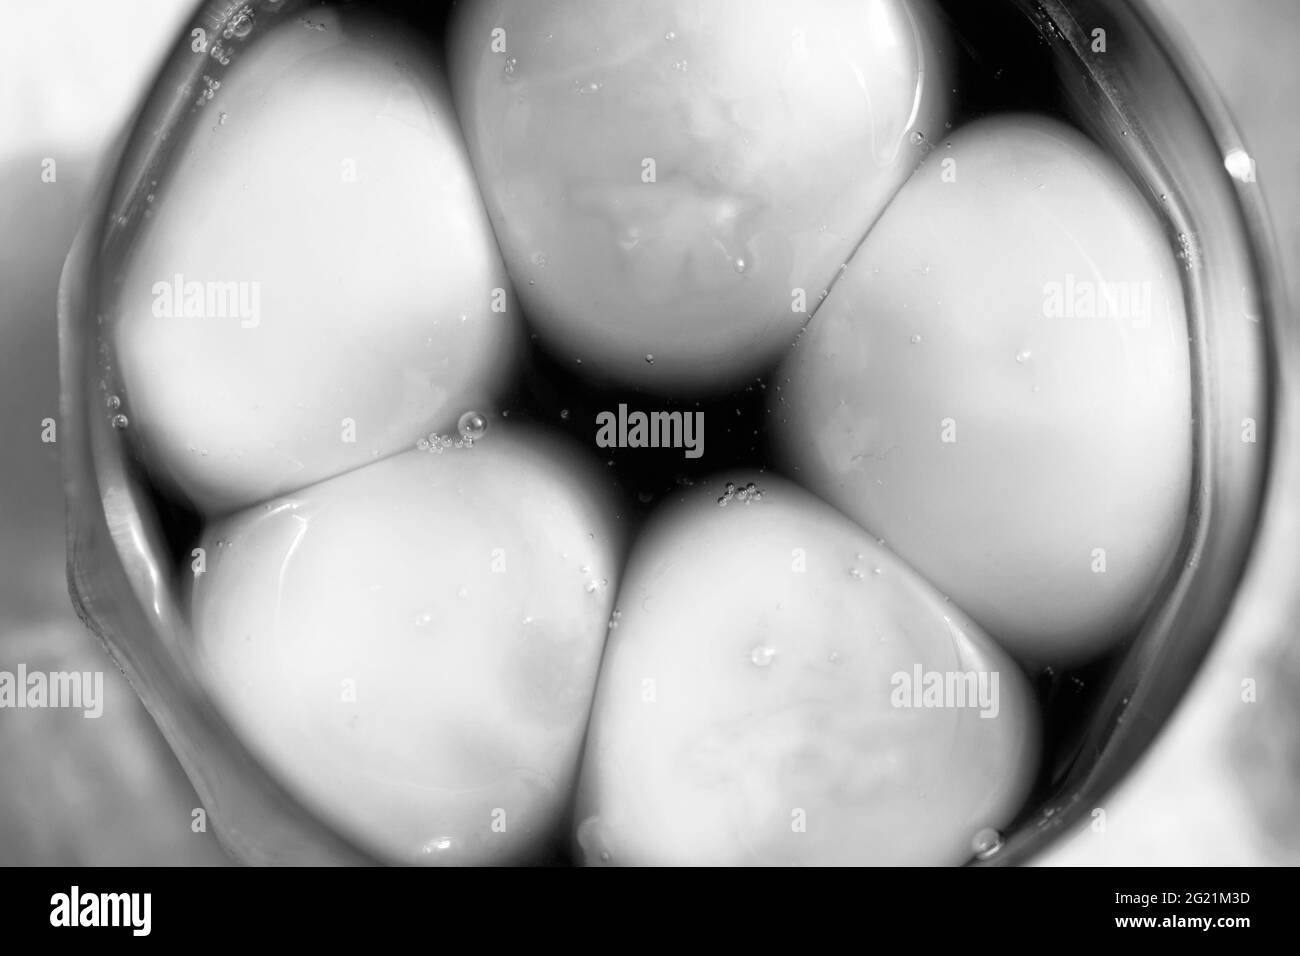 Jaunes d'œufs brillants dans une marinade japonaise dans un verre. Photo en noir et blanc. Banque D'Images